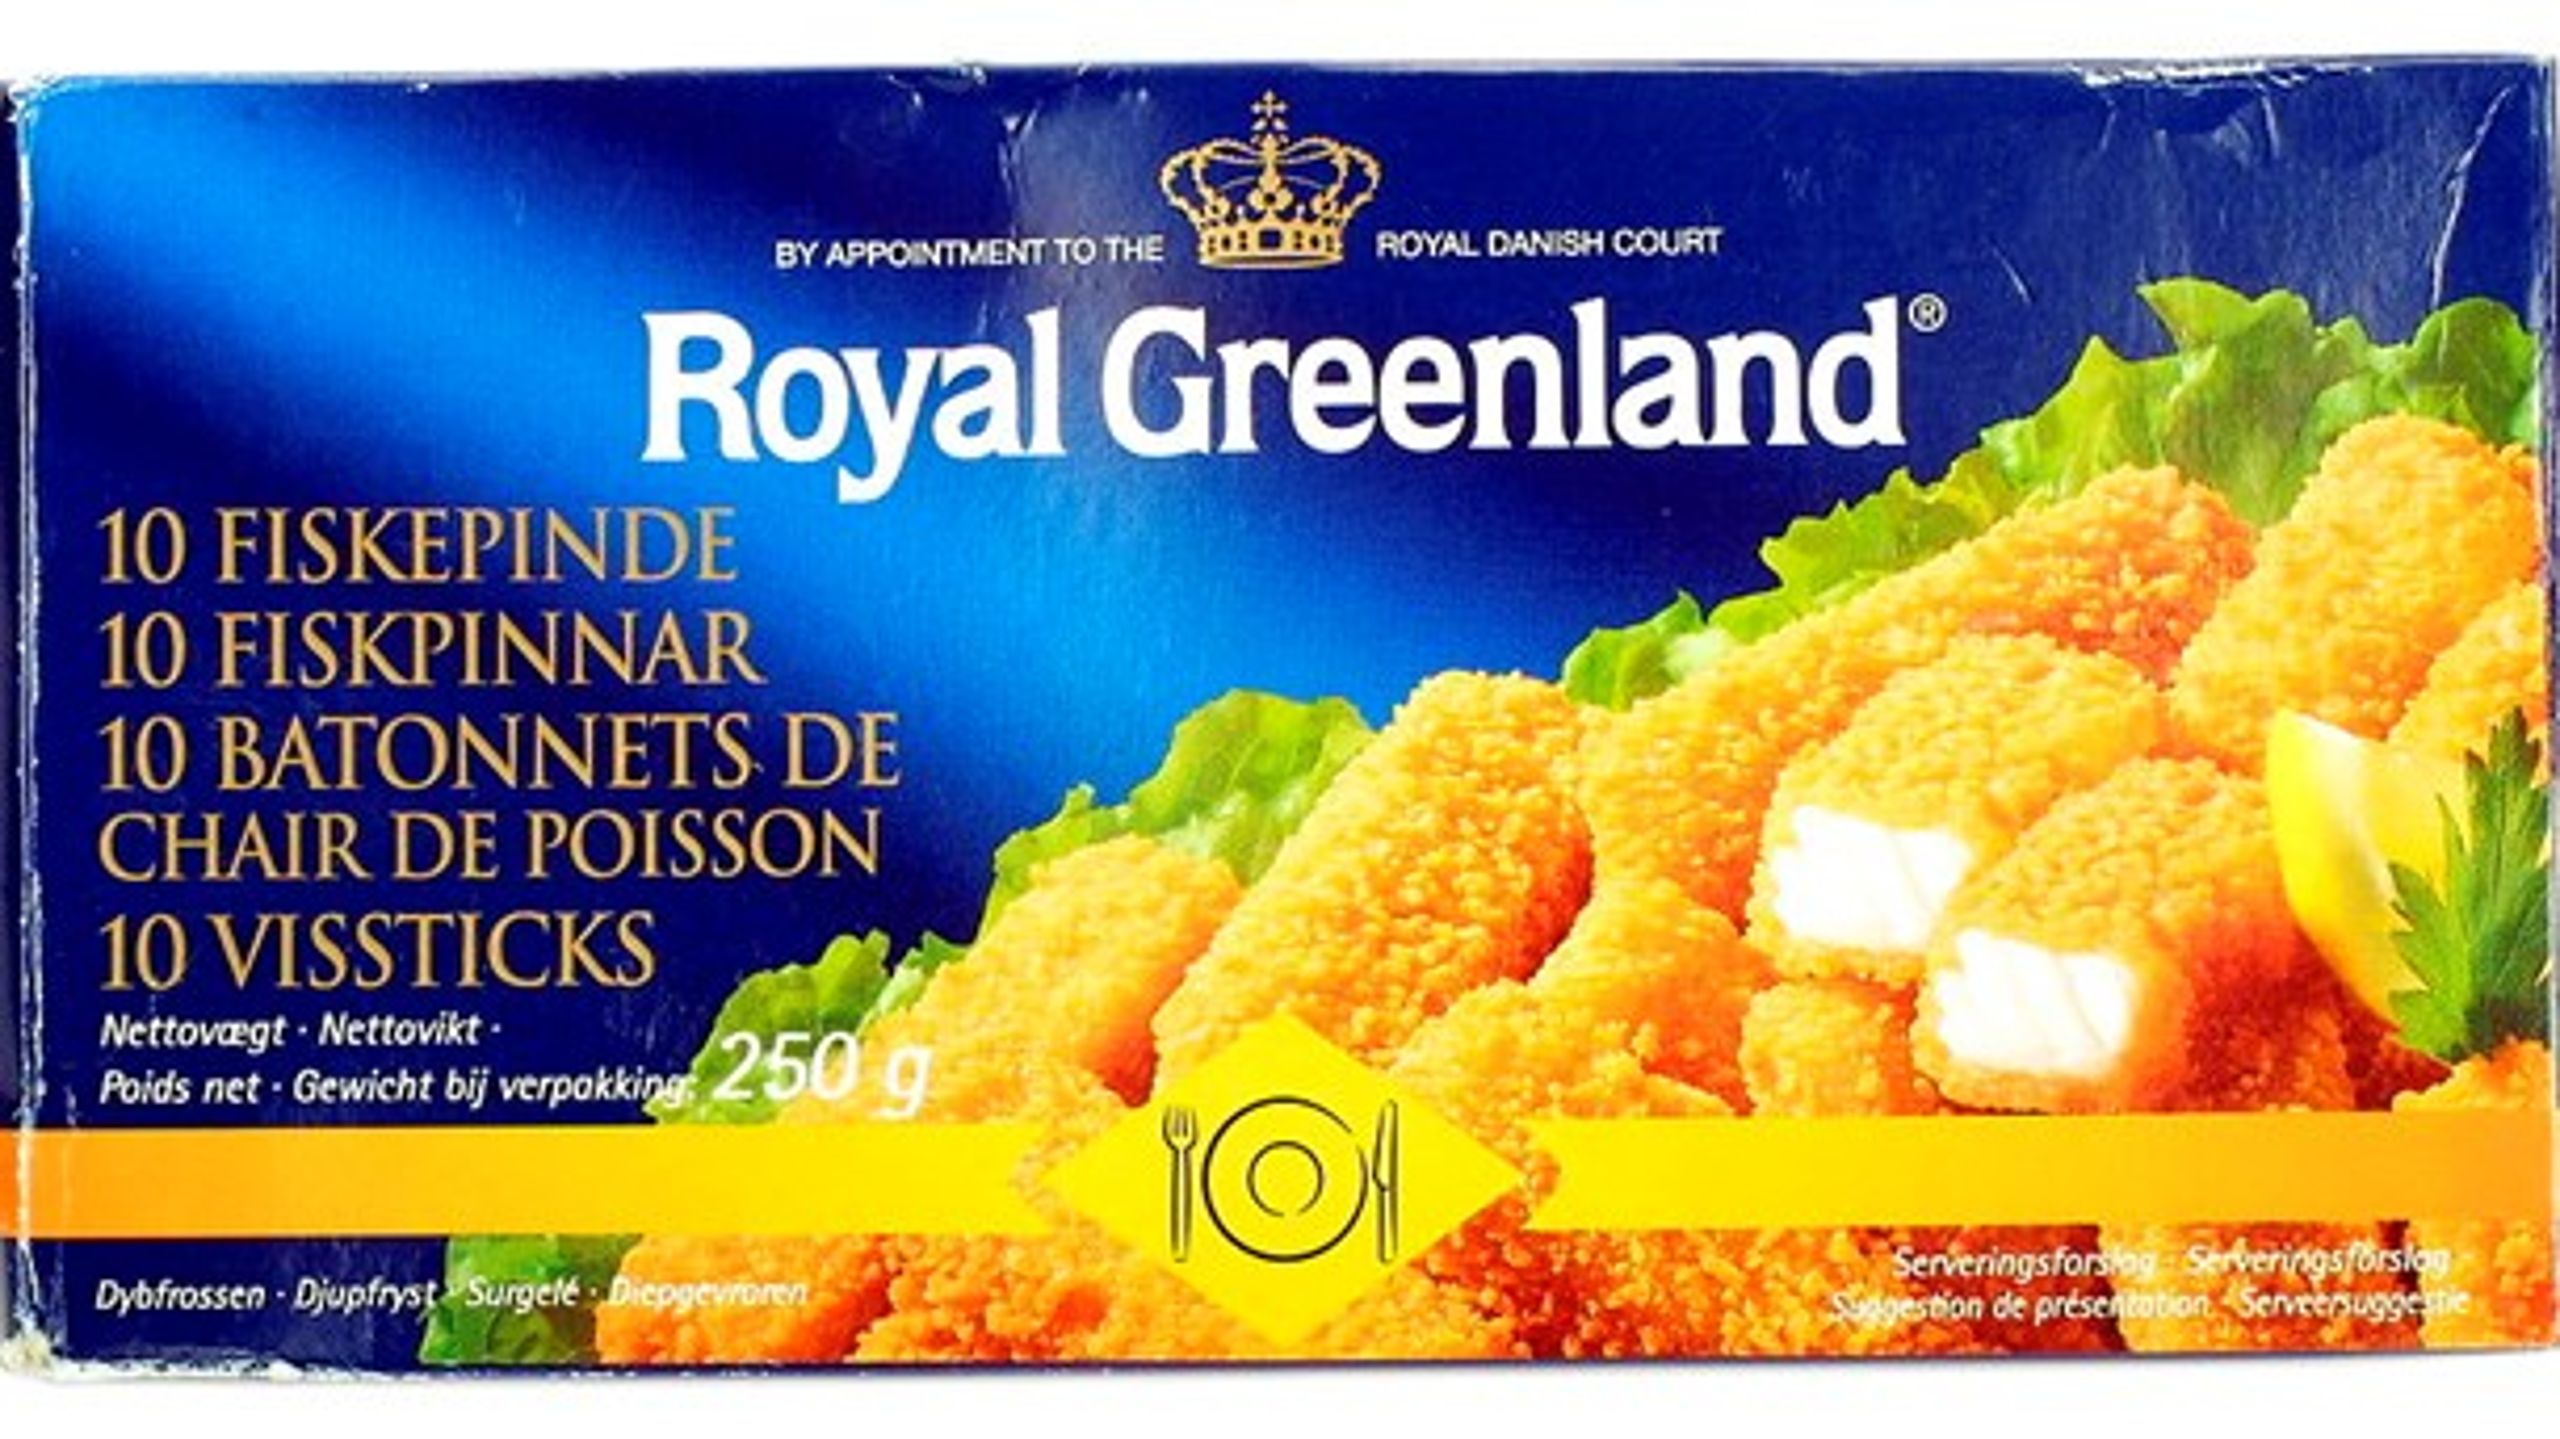 Fiskepinde er en af de madvarer, der har været i fokus, når snakken er faldet på forskellig kvalitet på ensudseende produkter. Modelfoto – Royal Greenland er ikke mistænkt for at snyde med kvaliteten.